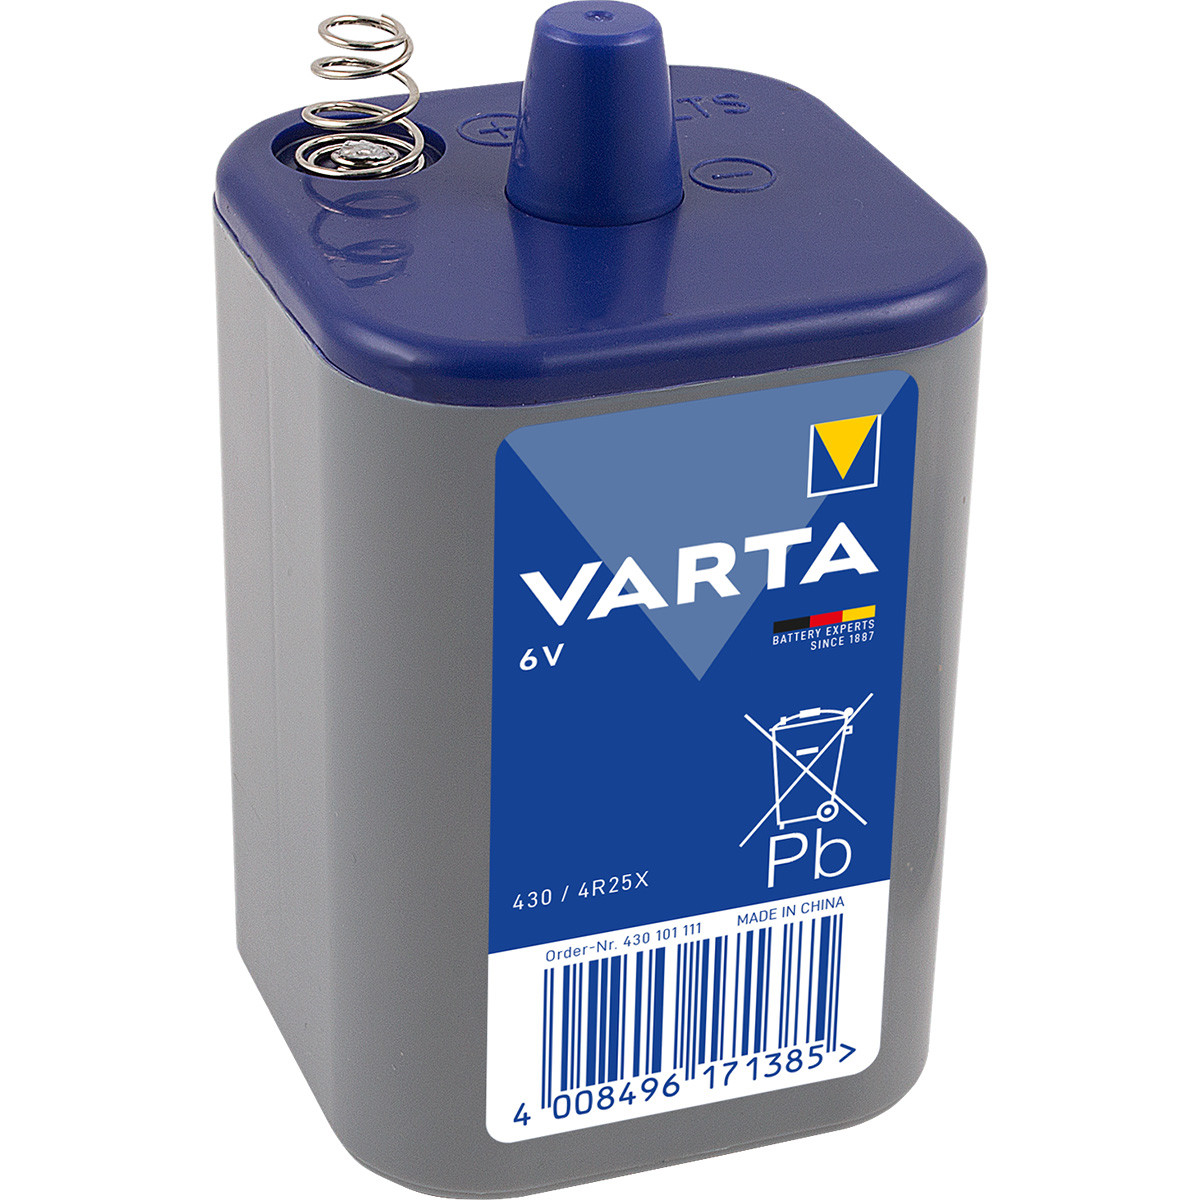 Varta 430 / 4R25X